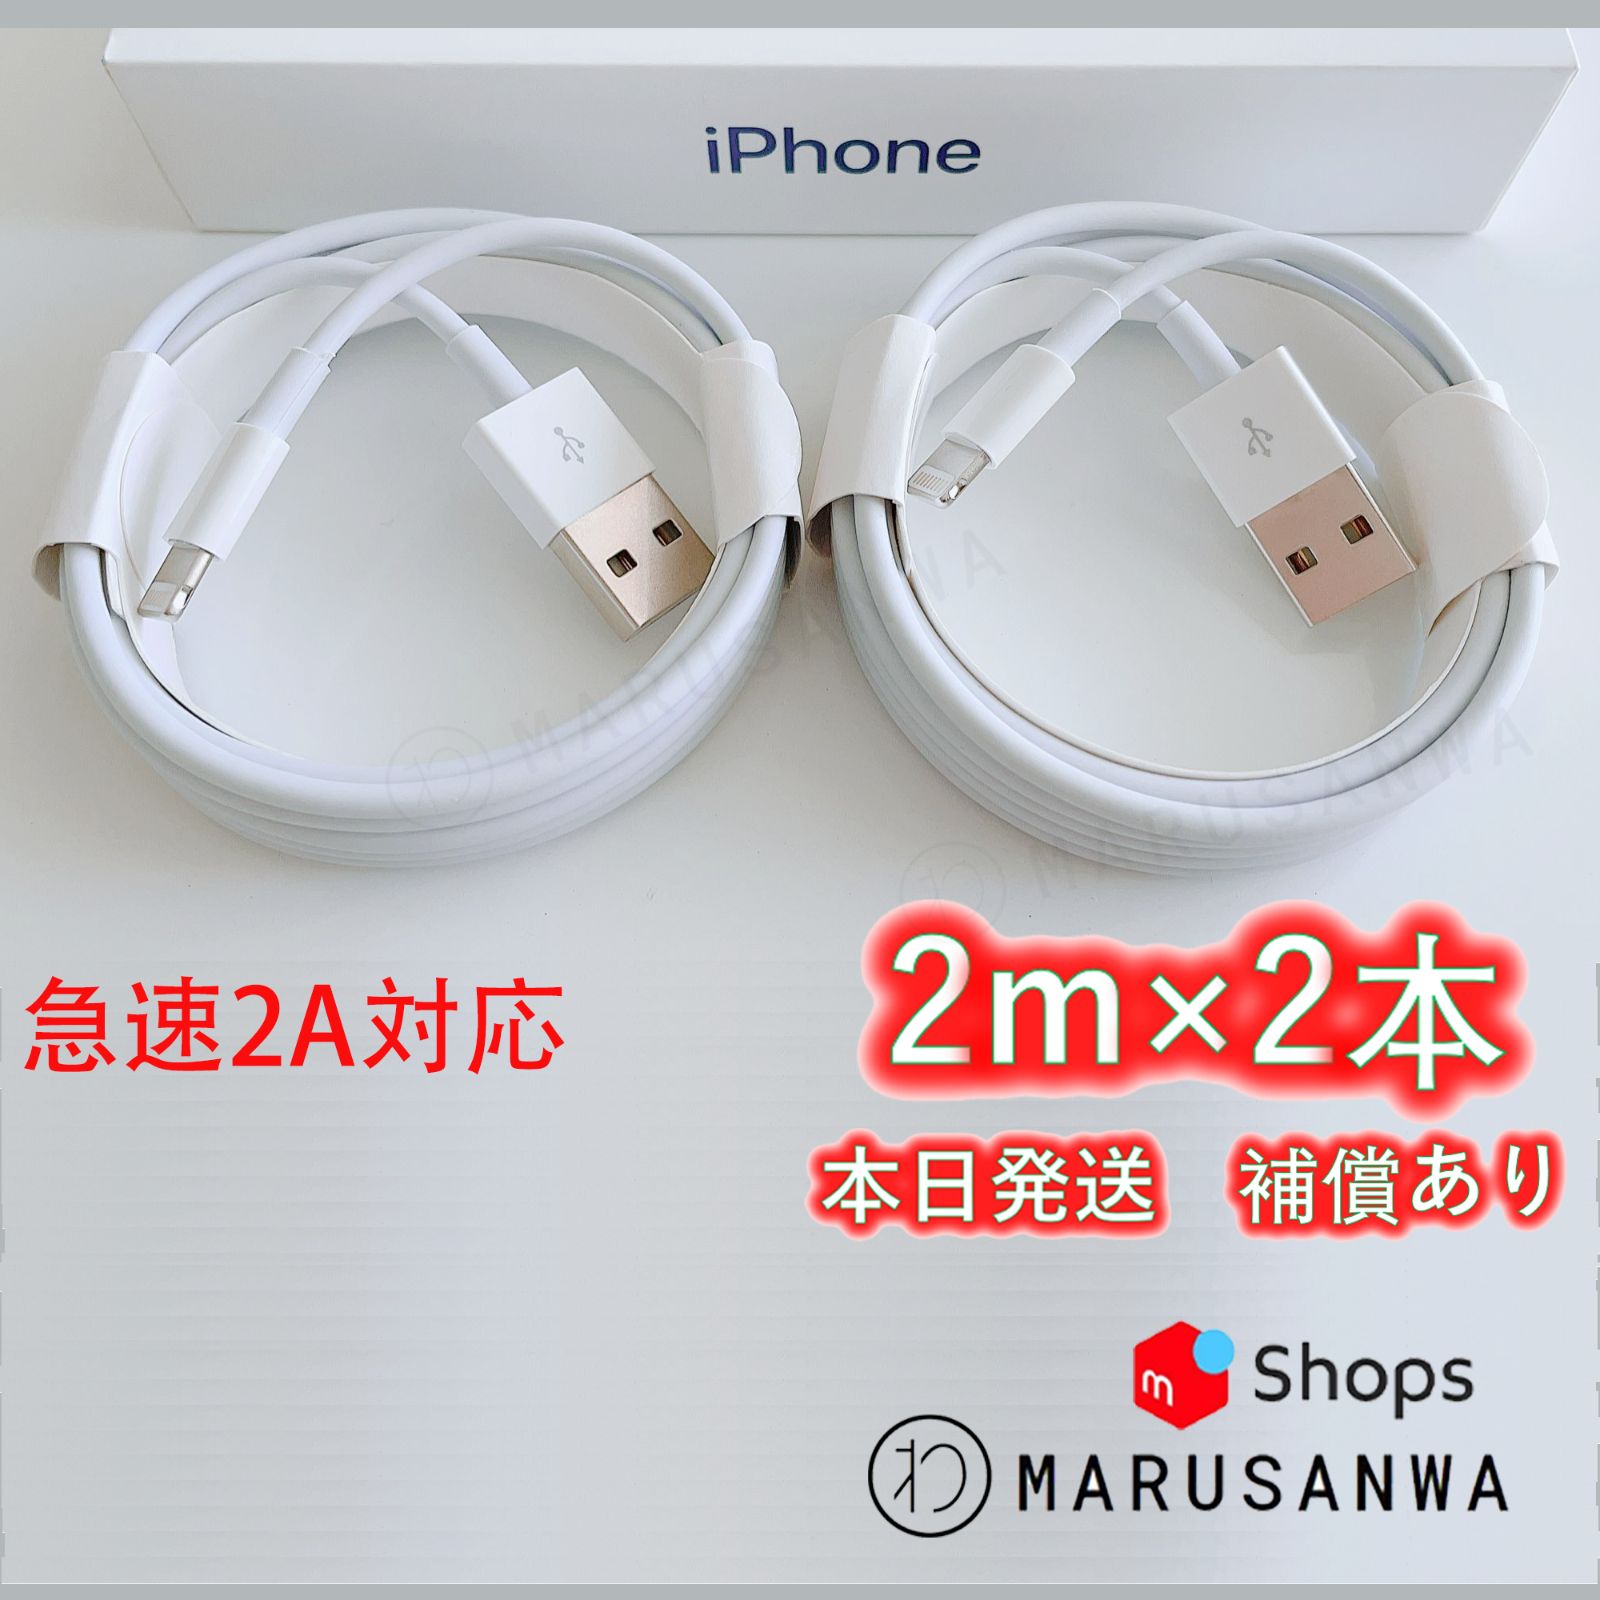 2本2m iPhone 充電器 Apple純正品質 充電ケーブル ラ(9Wh) - スマホ ...